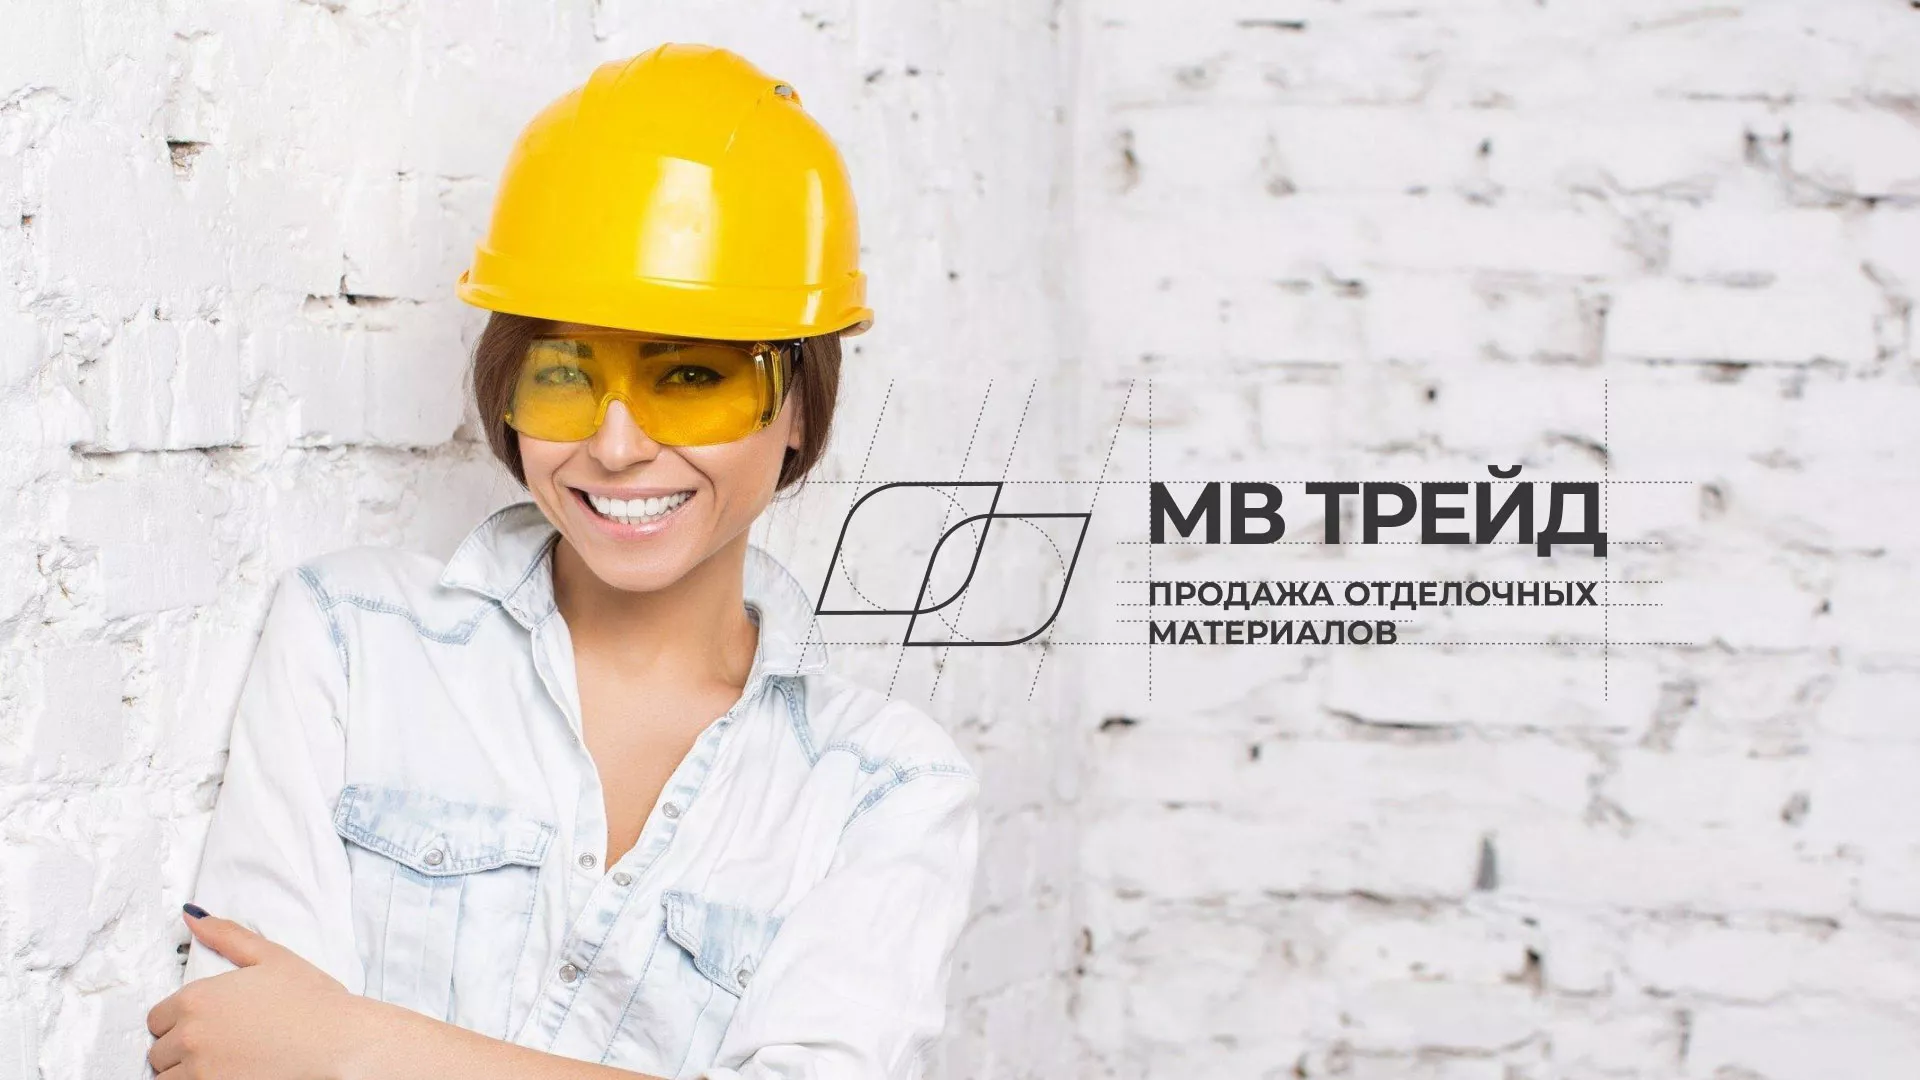 Разработка логотипа и сайта компании «МВ Трейд» в Железногорске-Илимском